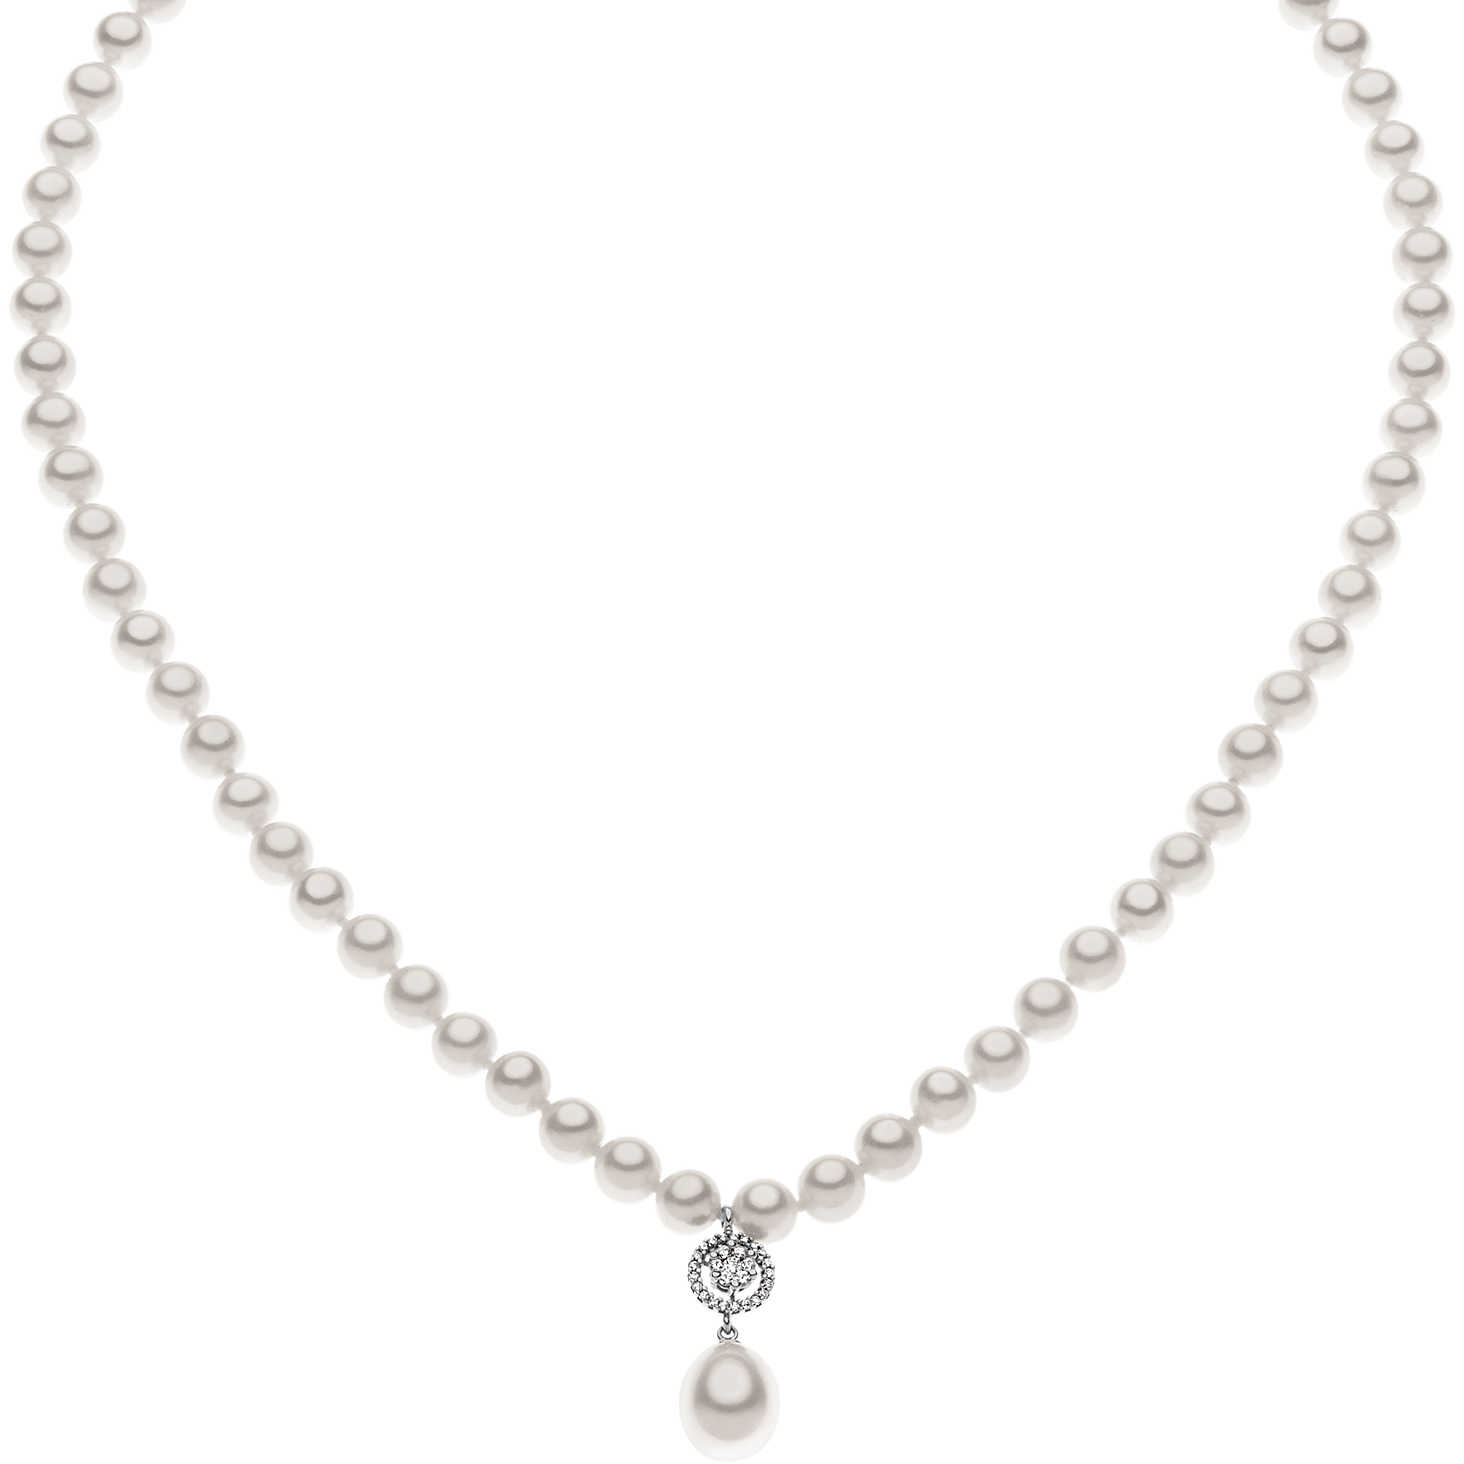 Women's Comete Gioielli Pearl Necklace FWQ 159